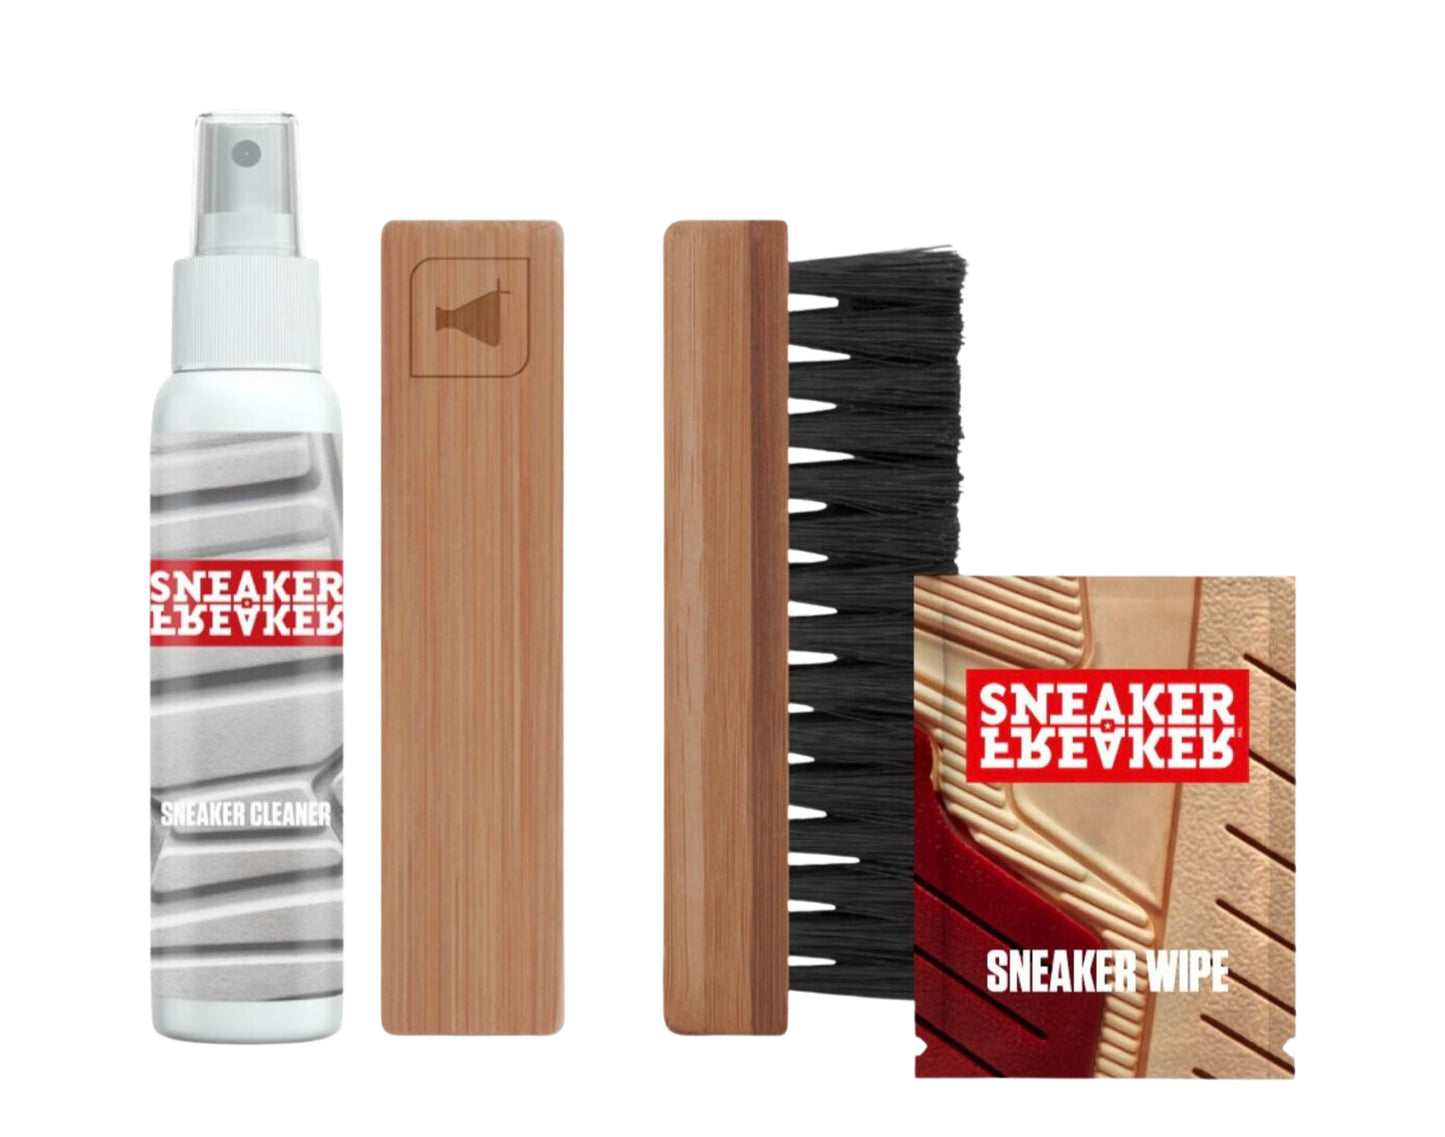 Sneaker Freaker x Sneaker Basic Kit 125ml - Clean - Care - Protect